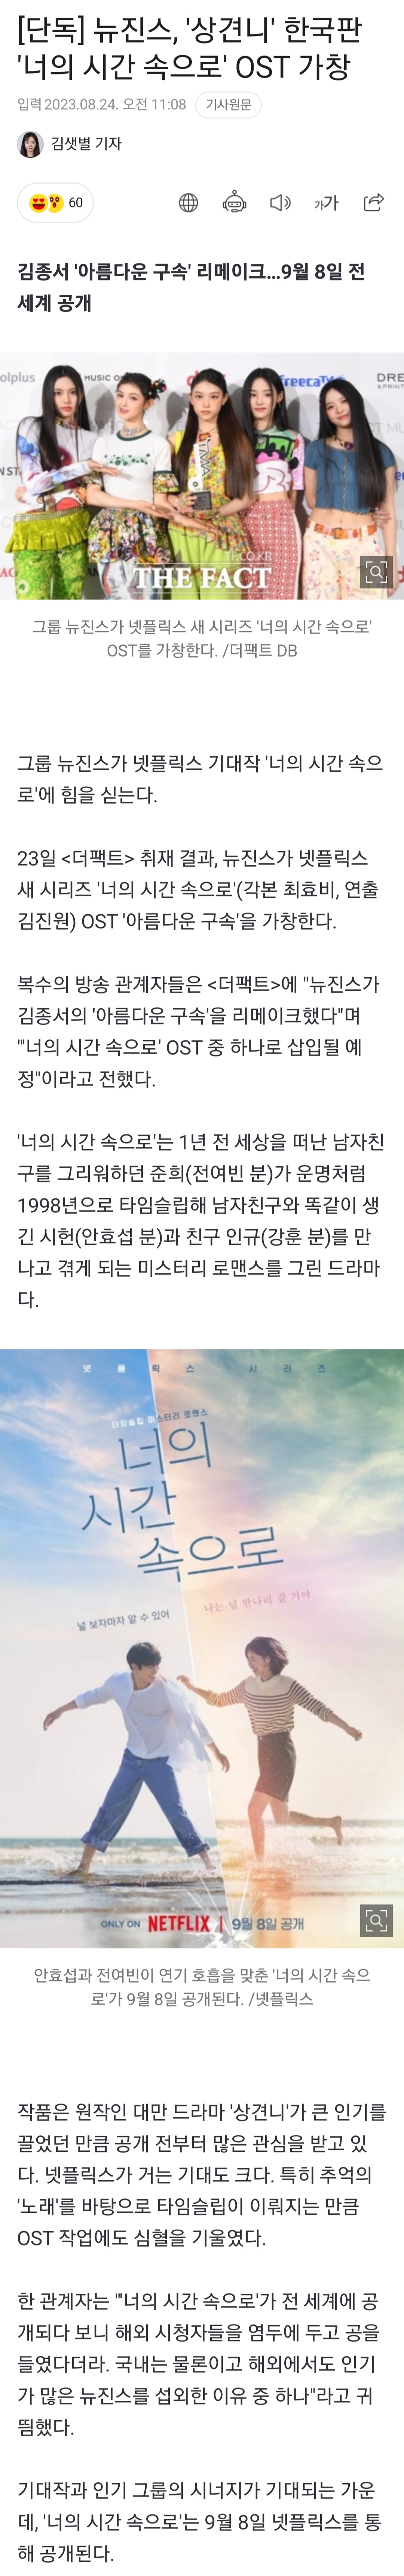 [정보/소식] 뉴진스, '상견니' 한국판 '너의 시간 속으로' OST 가창 | 인스티즈